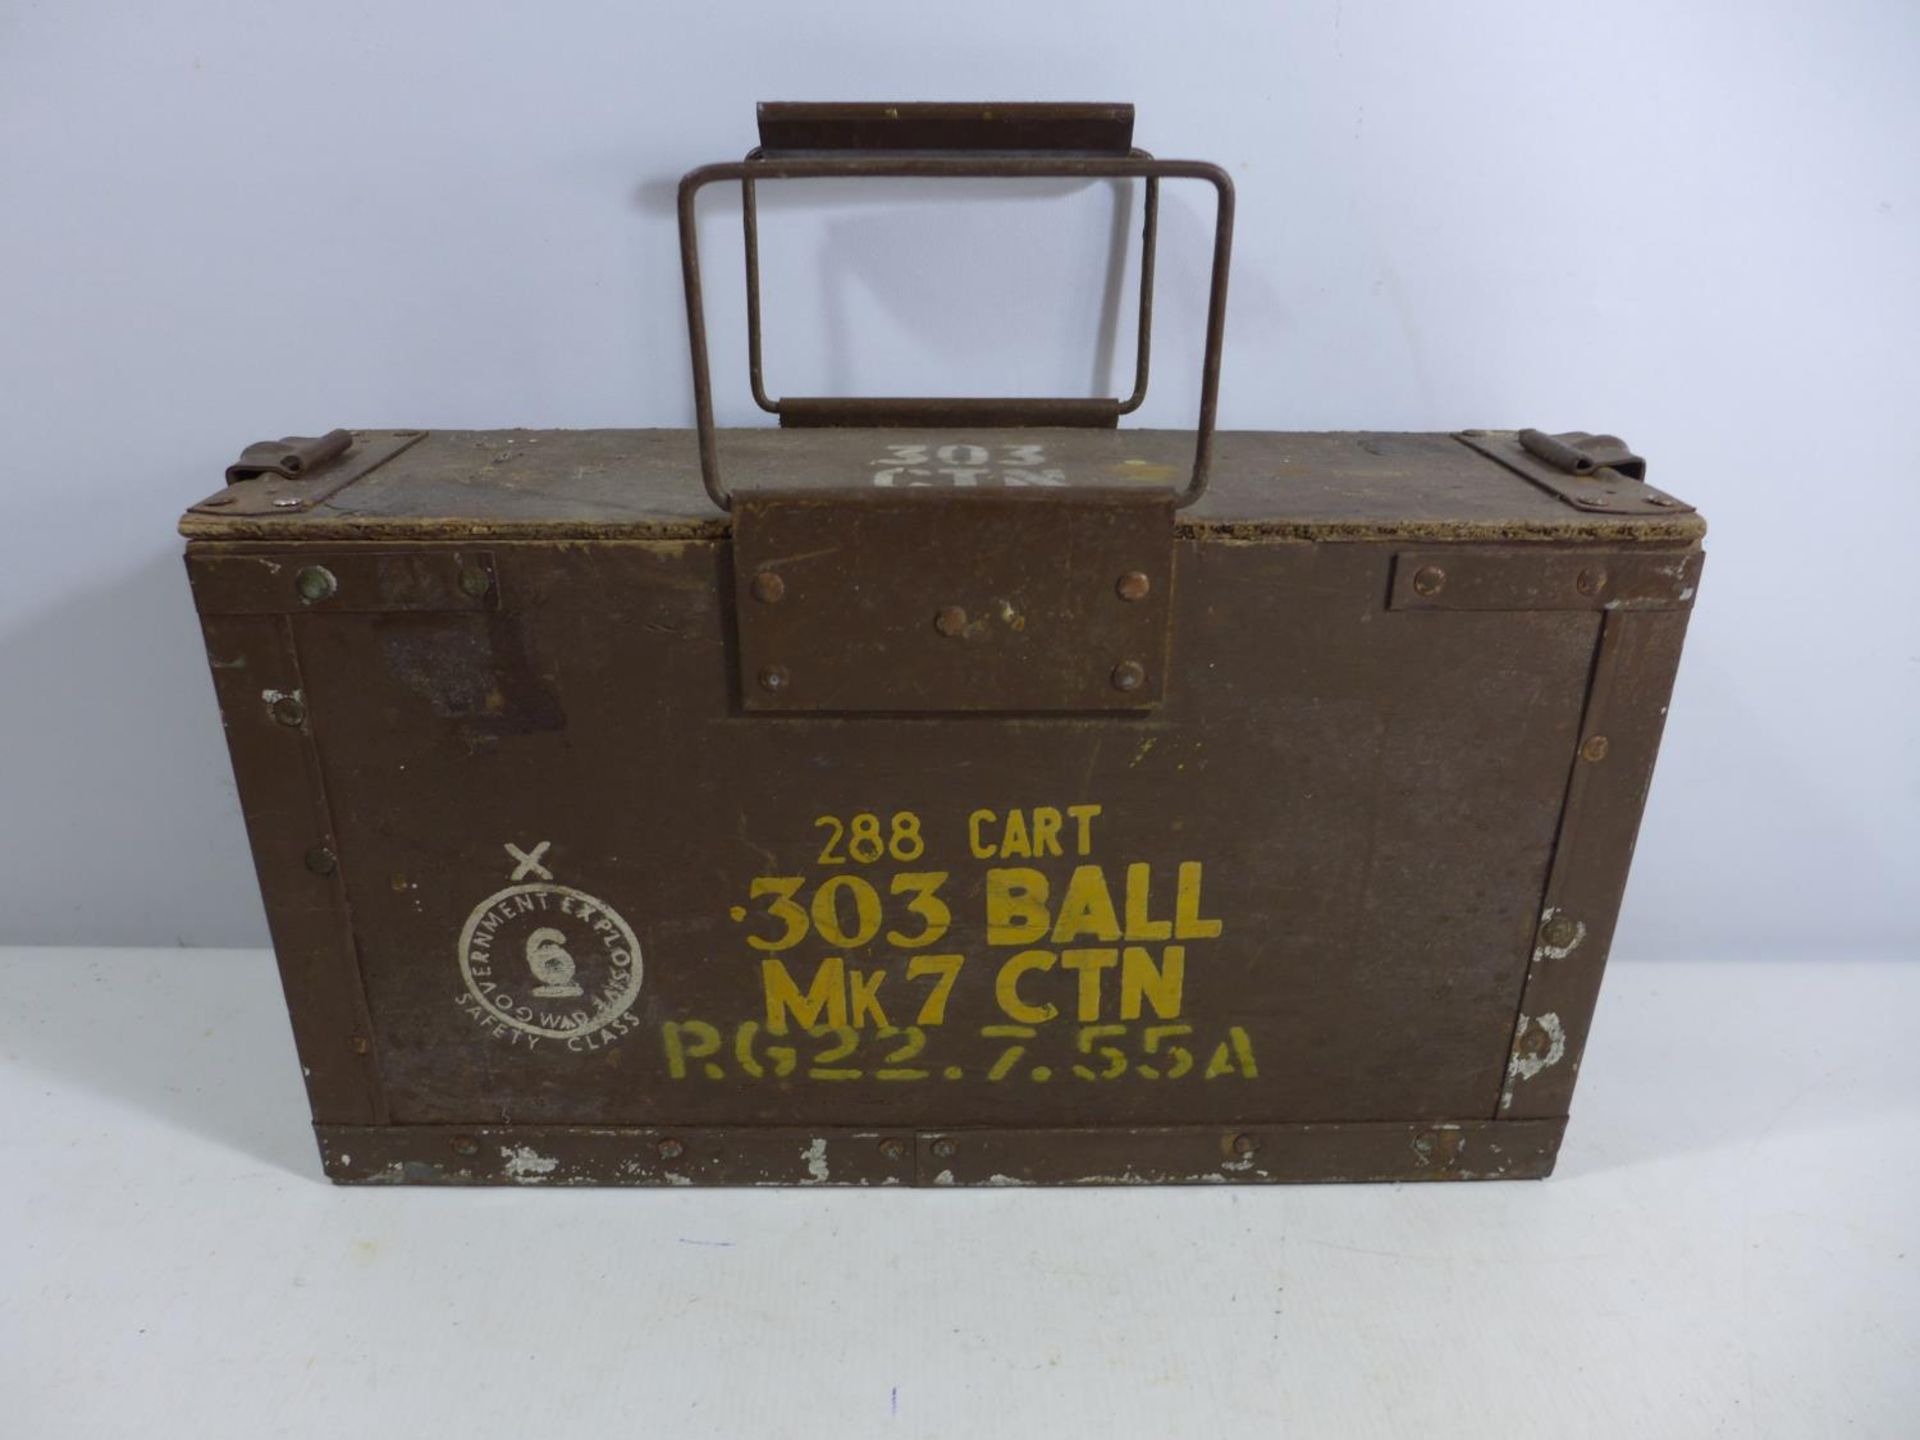 A .303 BULLET AMMUNITION BOX